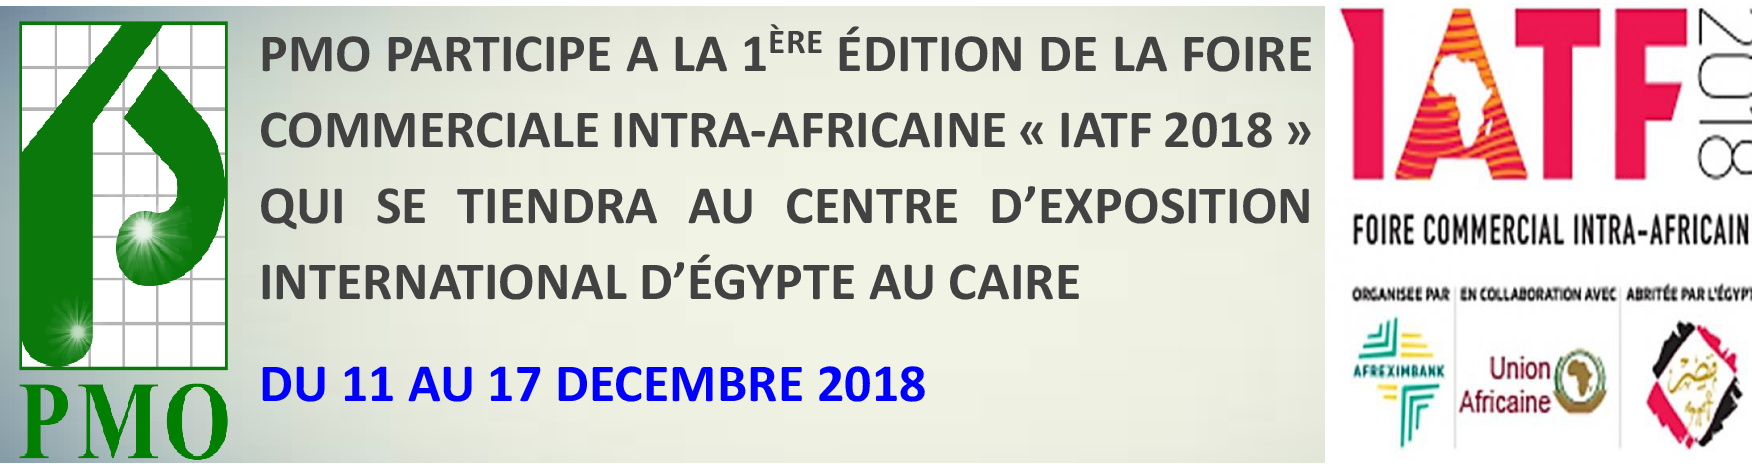 PMO Participe 1ÈRE ÉDITION DE LA FOIRE COMMERCIALE INTRA-AFRICAINE IATF 2018 EGYPTE